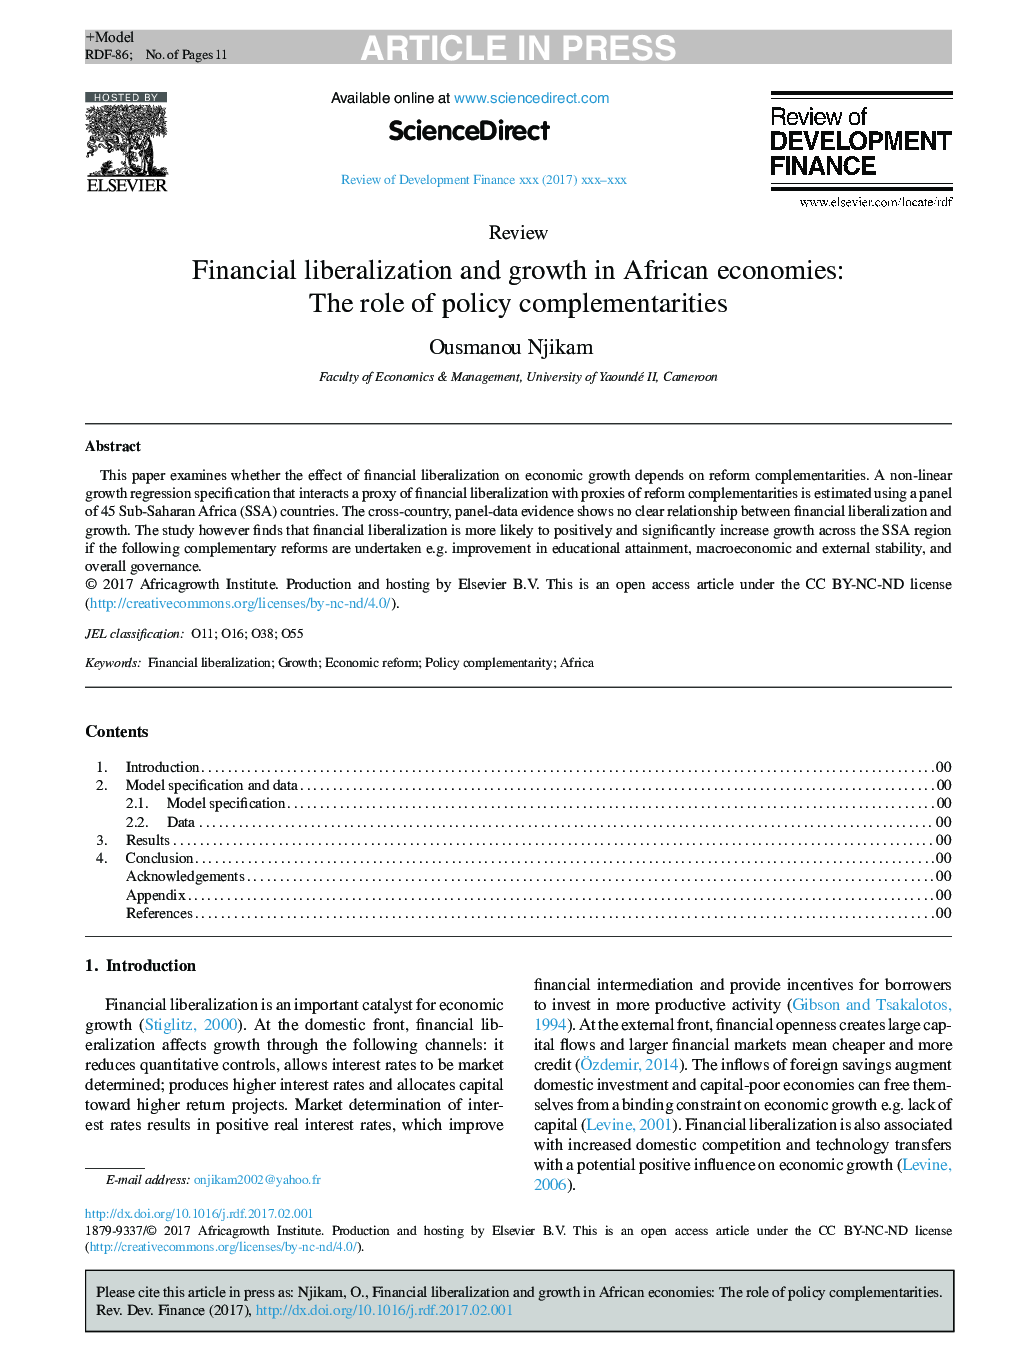 آزاد سازی مالی و رشد در اقتصادهای آفریقا: نقش مکمل سیاست 